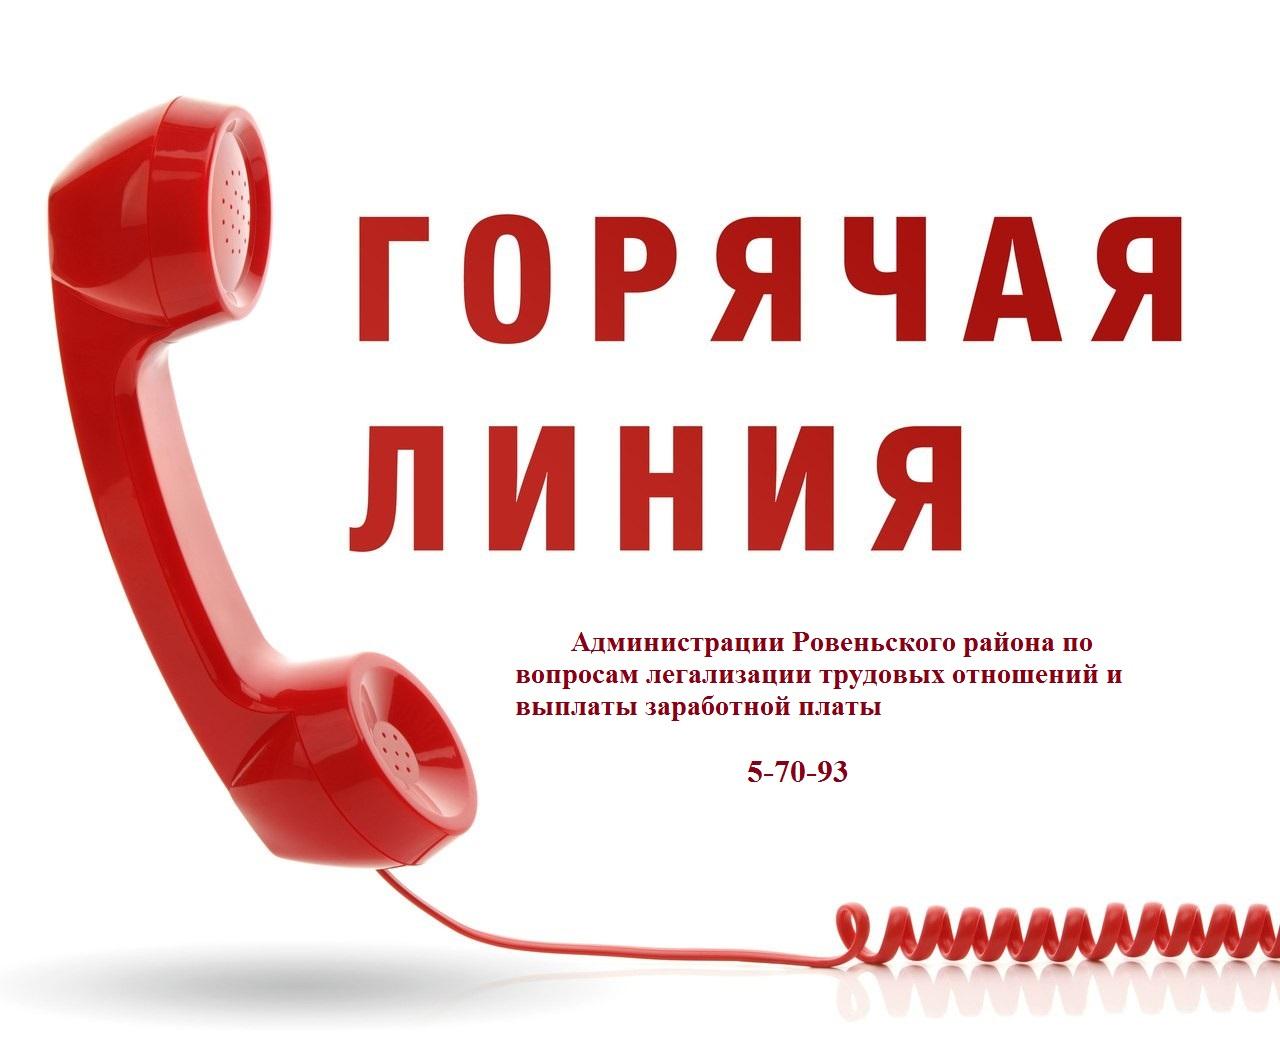 Уважаемые жители Ровенького района! Если вы считаете, что работодатель нарушает ваши трудовые права, в администрации Ровеньского района работает телефон «Горячей линии»  5-70-93.